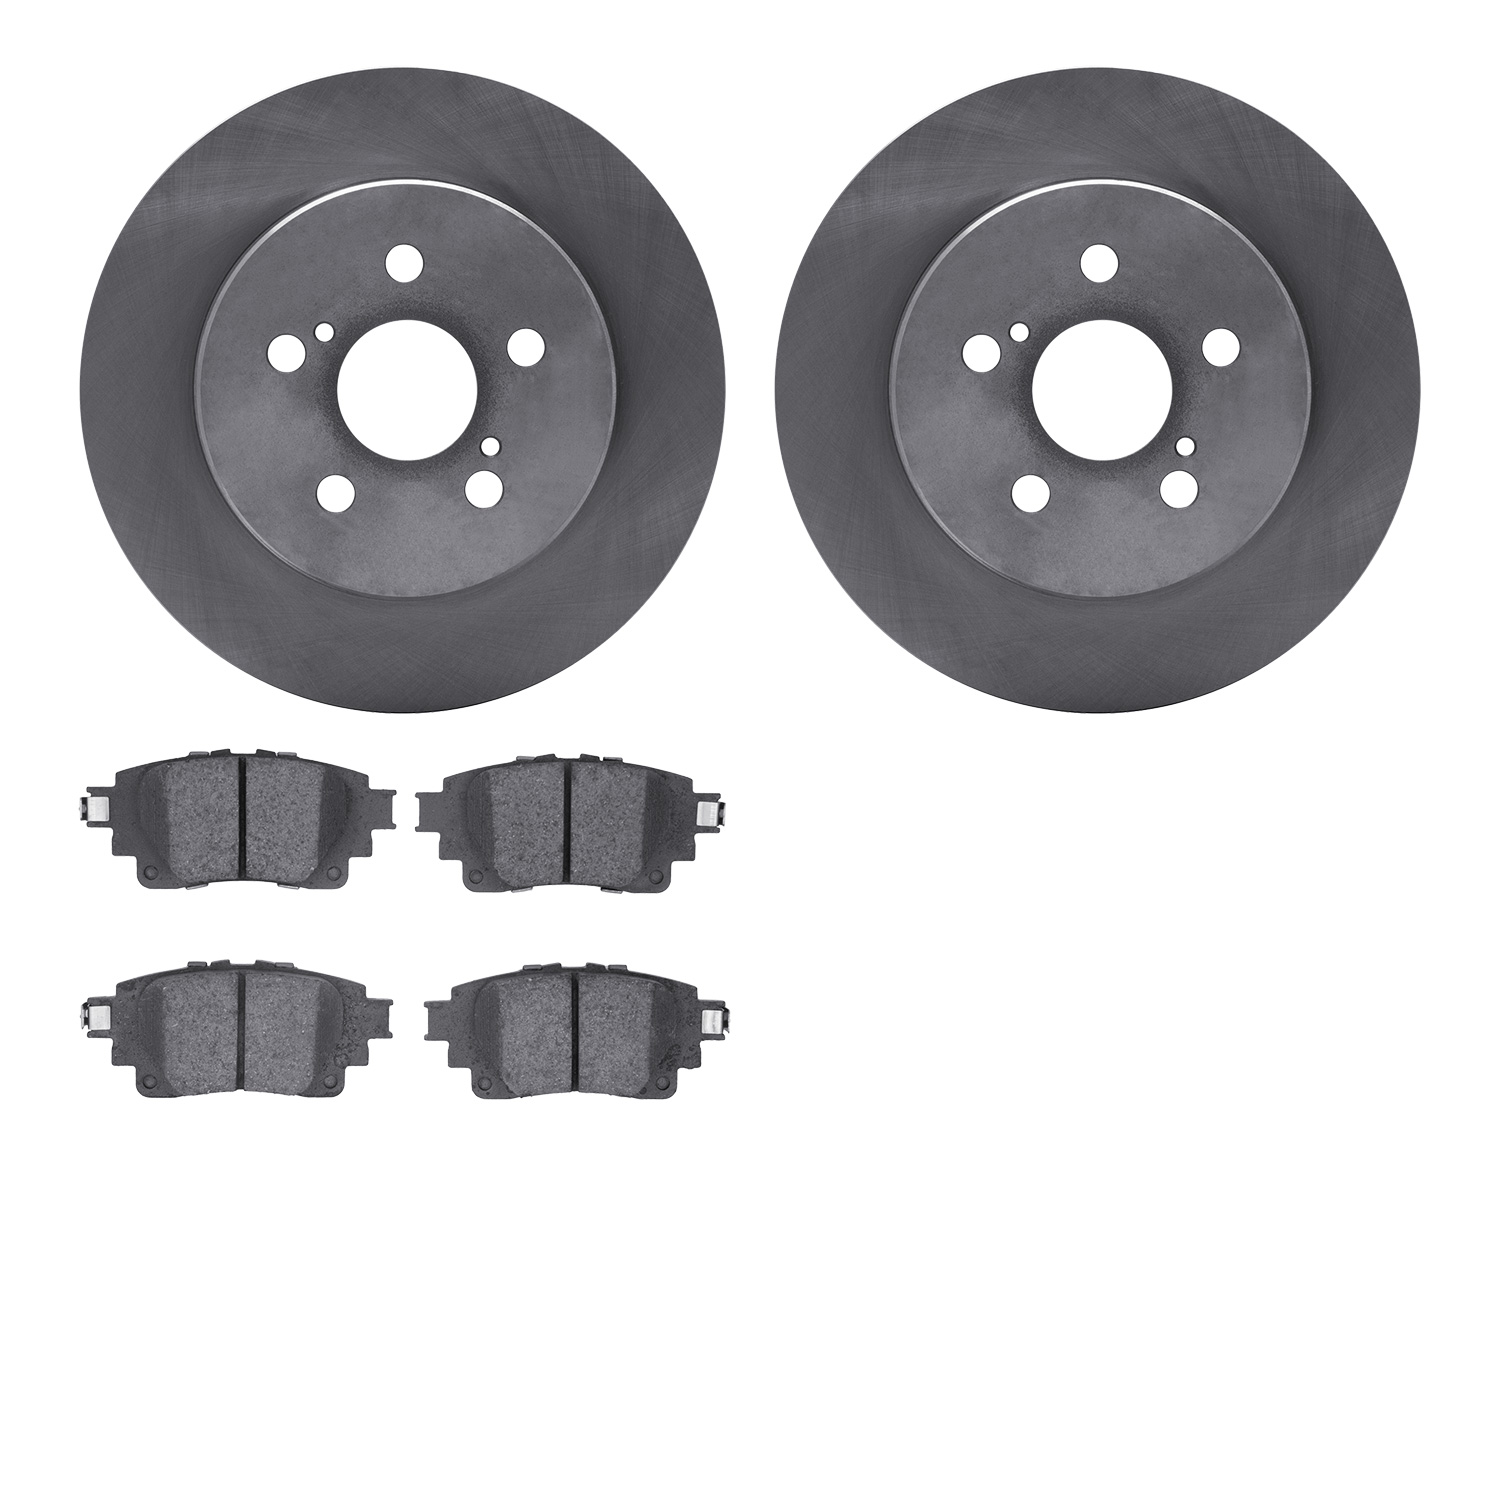 6502-76695 Brake Rotors w/5000 Advanced Brake Pads Kit, Fits Select Lexus/Toyota/Scion, Position: Rear